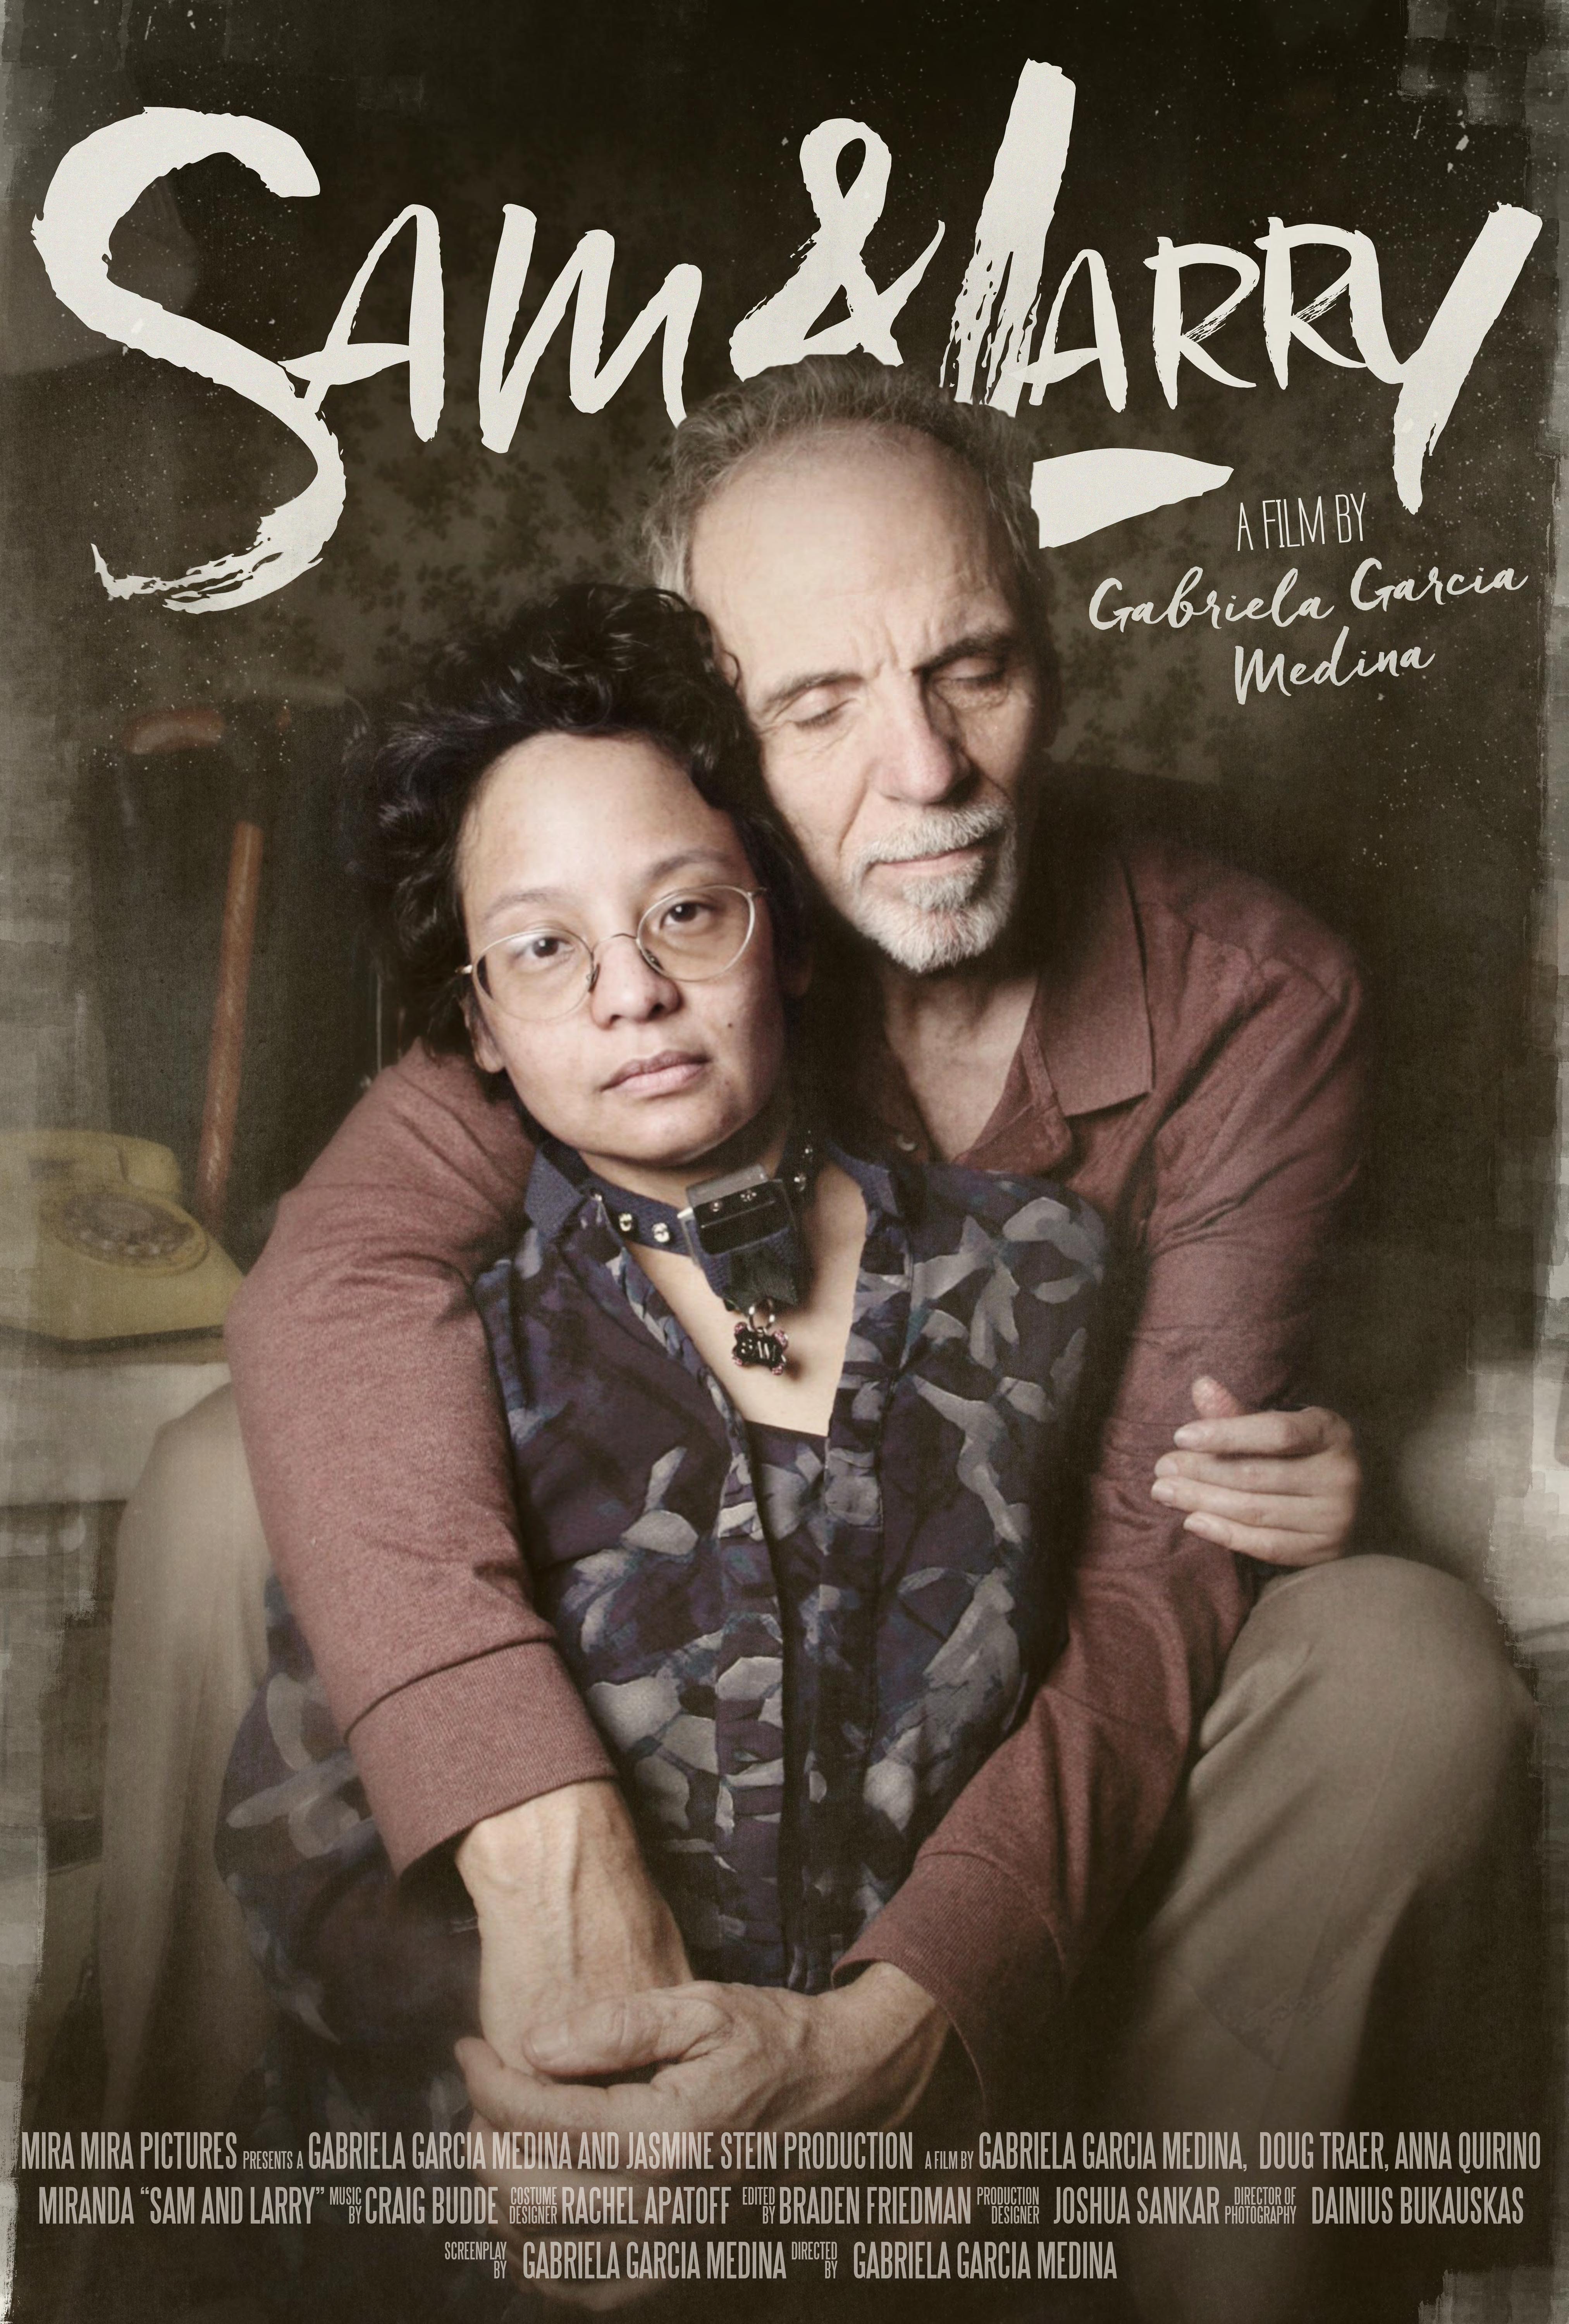 Sam and Larry, a film by Gabriela Garcia Medina. Poster Design by Joshua Sankar